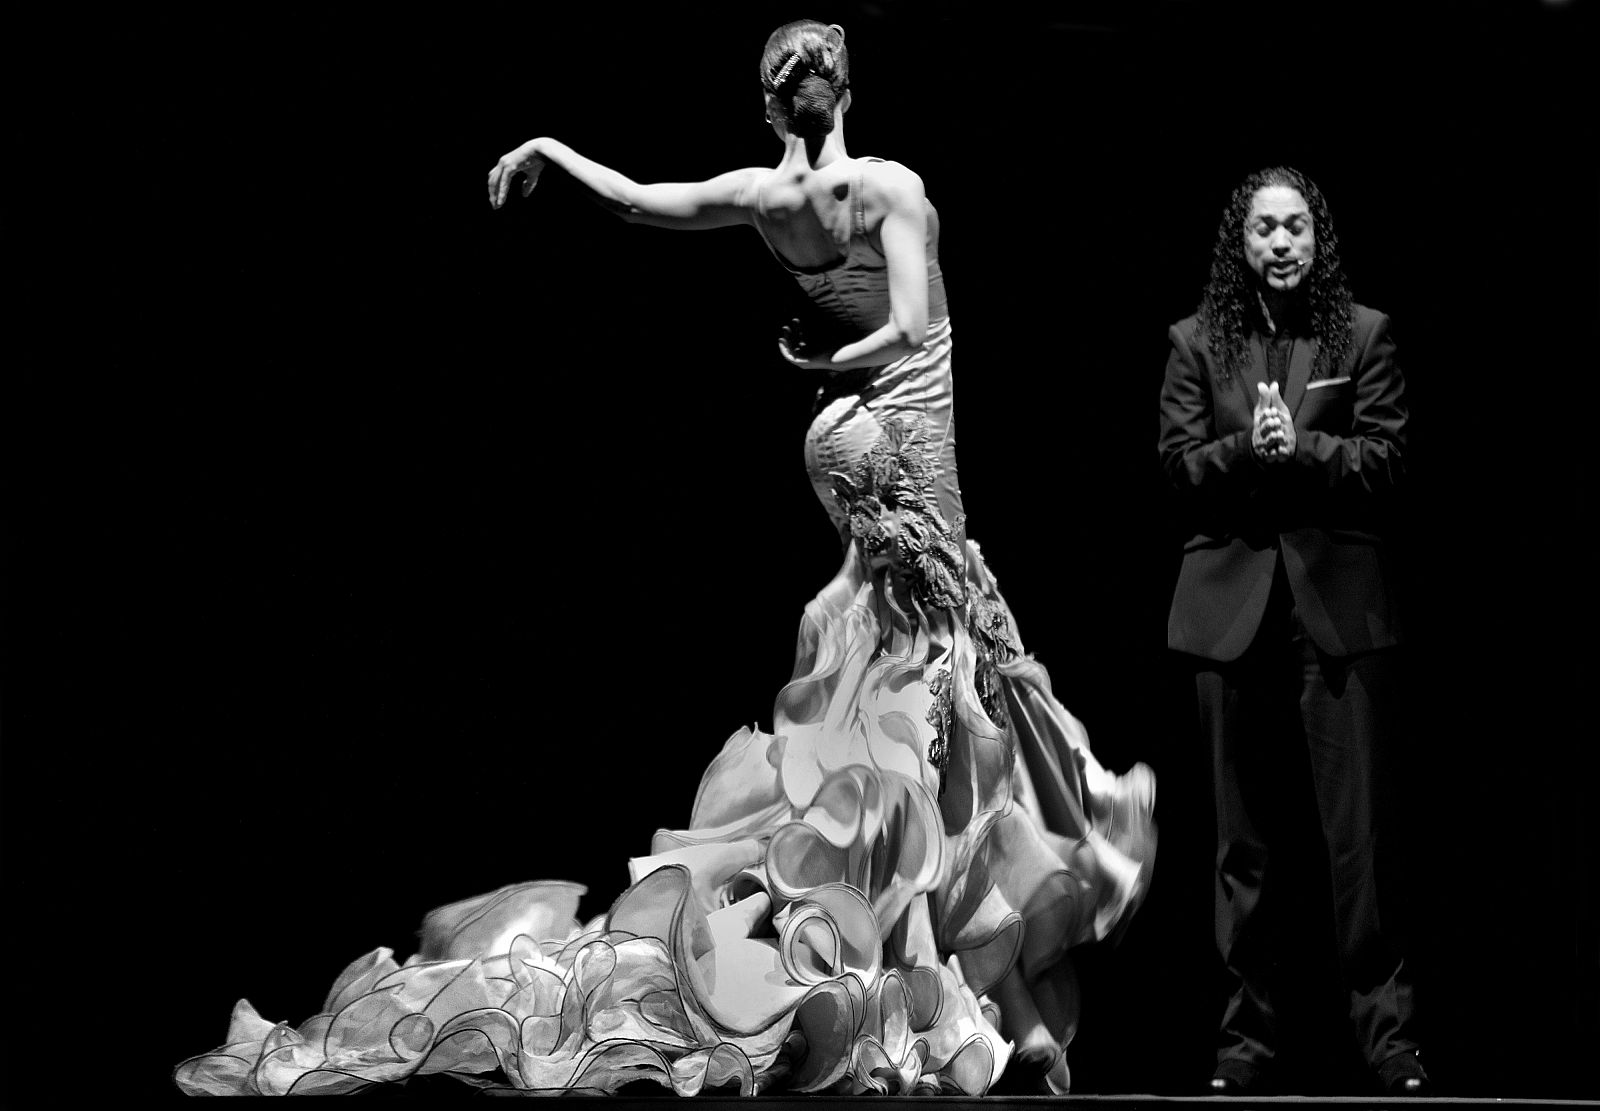 El vestuario diseñado por Victorio&Lucchino no es el típico de los espectáculos flamencos.